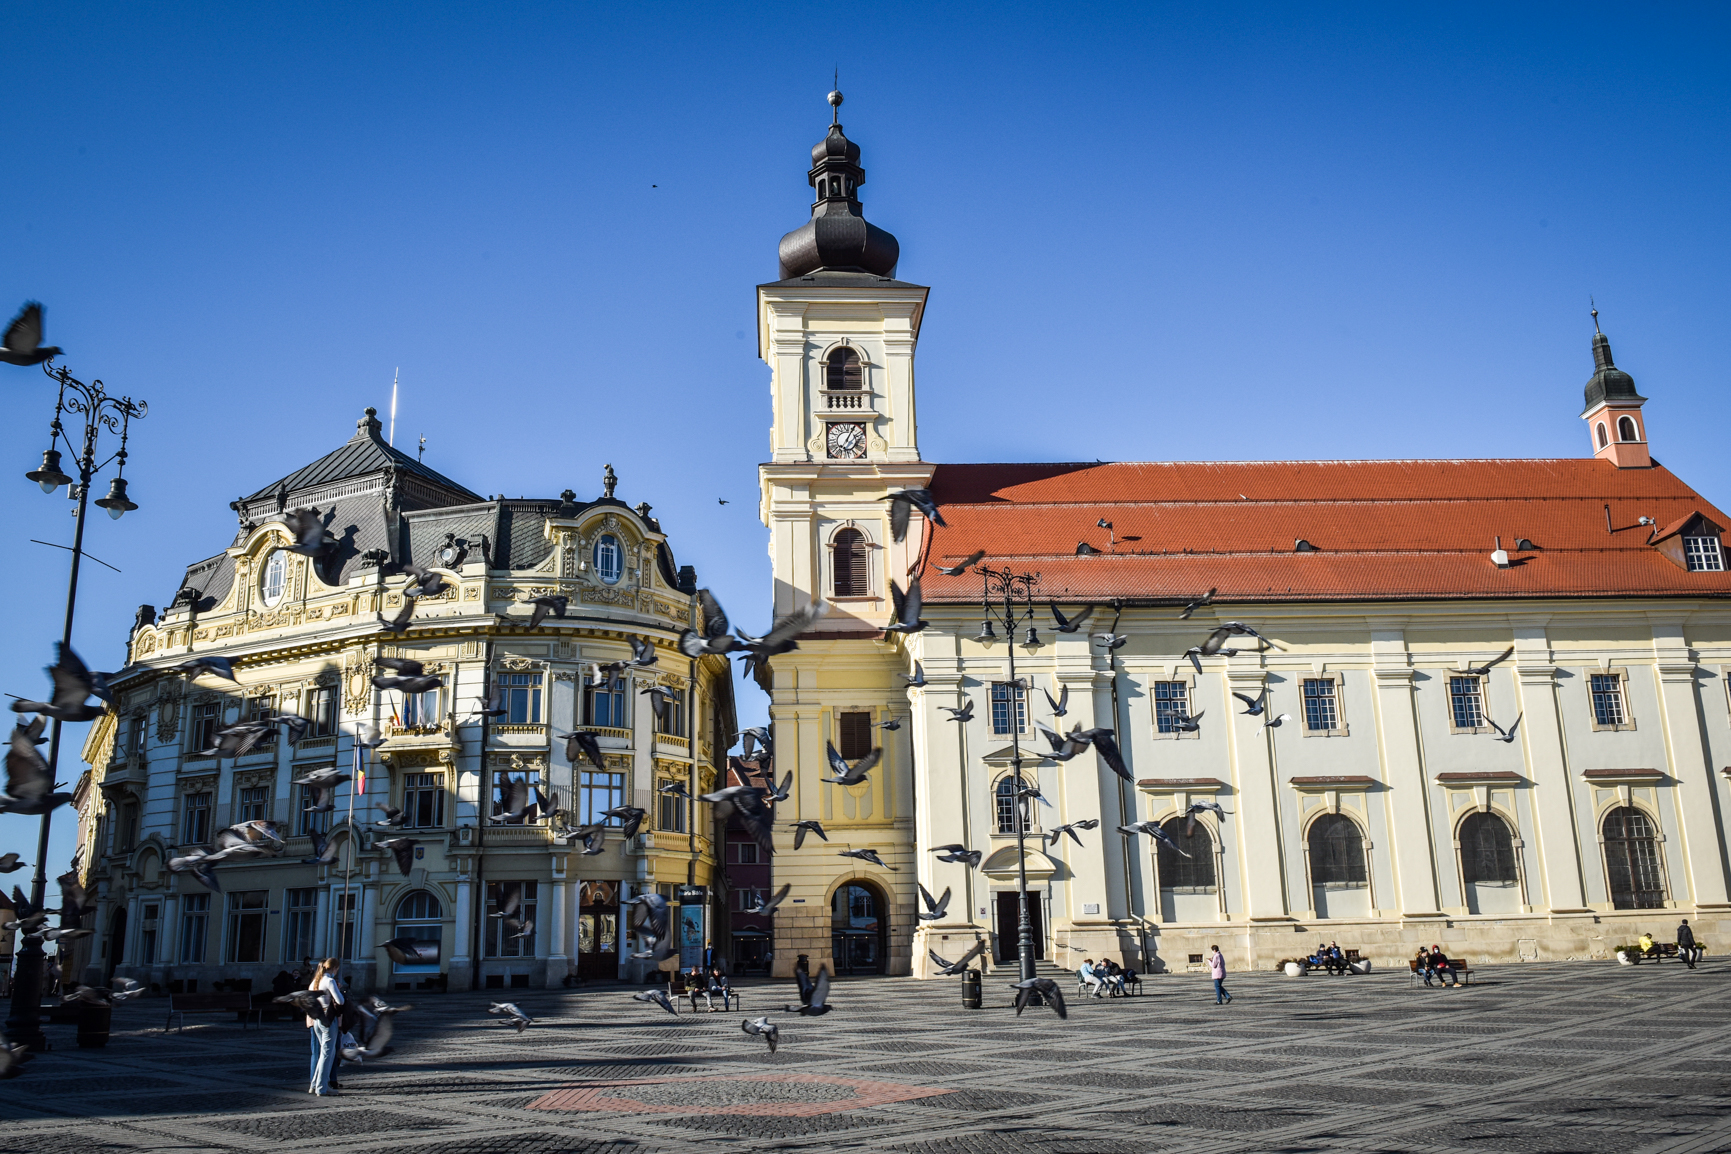 Incidența în Sibiu este aproape de 47 la mie, cu aproape 8.000 de cazuri active. 11 localități din județ au o rată de infectare de peste 20